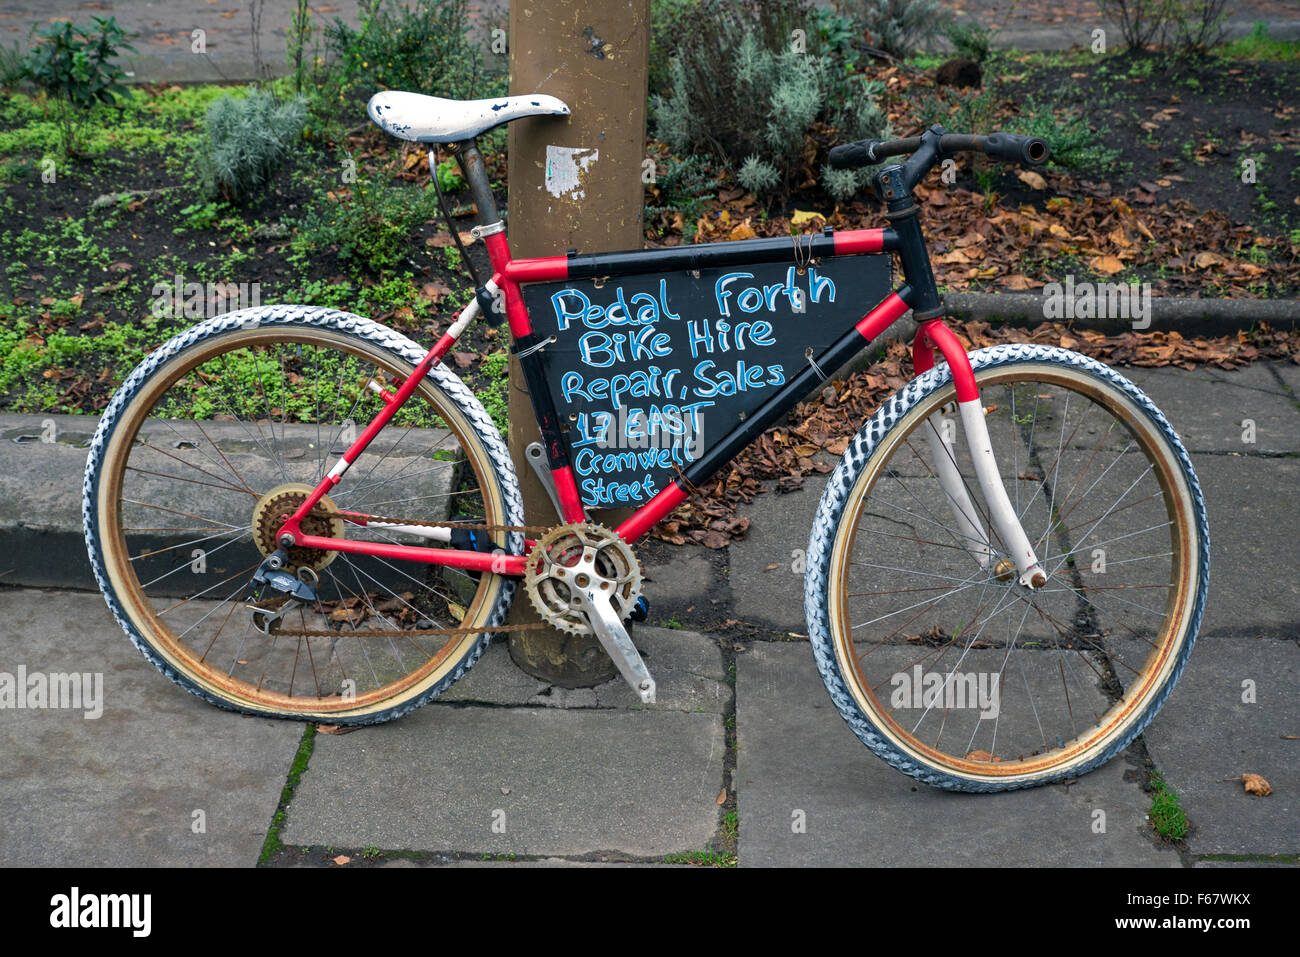 Publicité location fixé sur un lampadaire la publicité d'un atelier de réparation de vélos locaux à Édimbourg, Écosse, Royaume-Uni. Banque D'Images